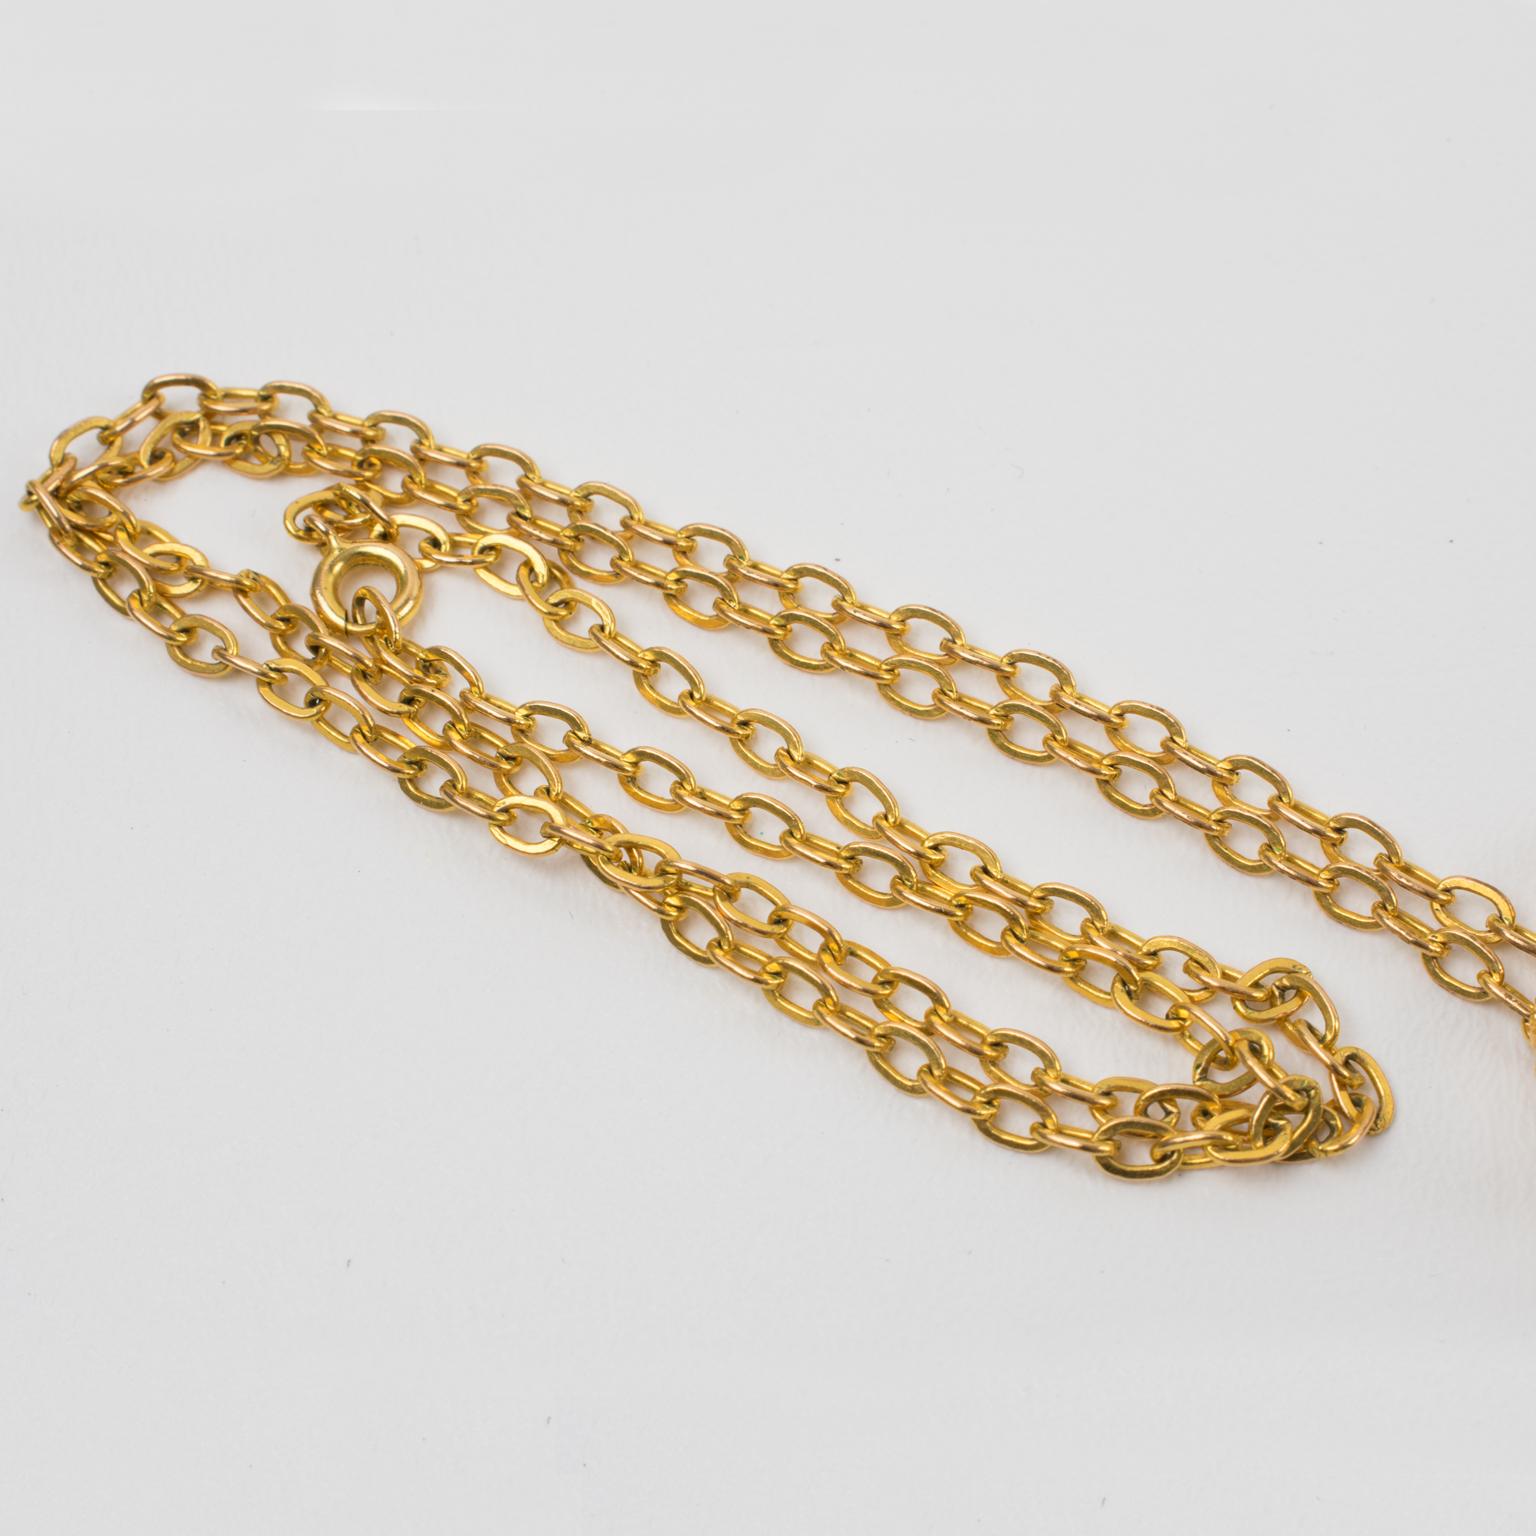 Christian Lacroix Gilt Metal Lace Pendant Necklace For Sale 4